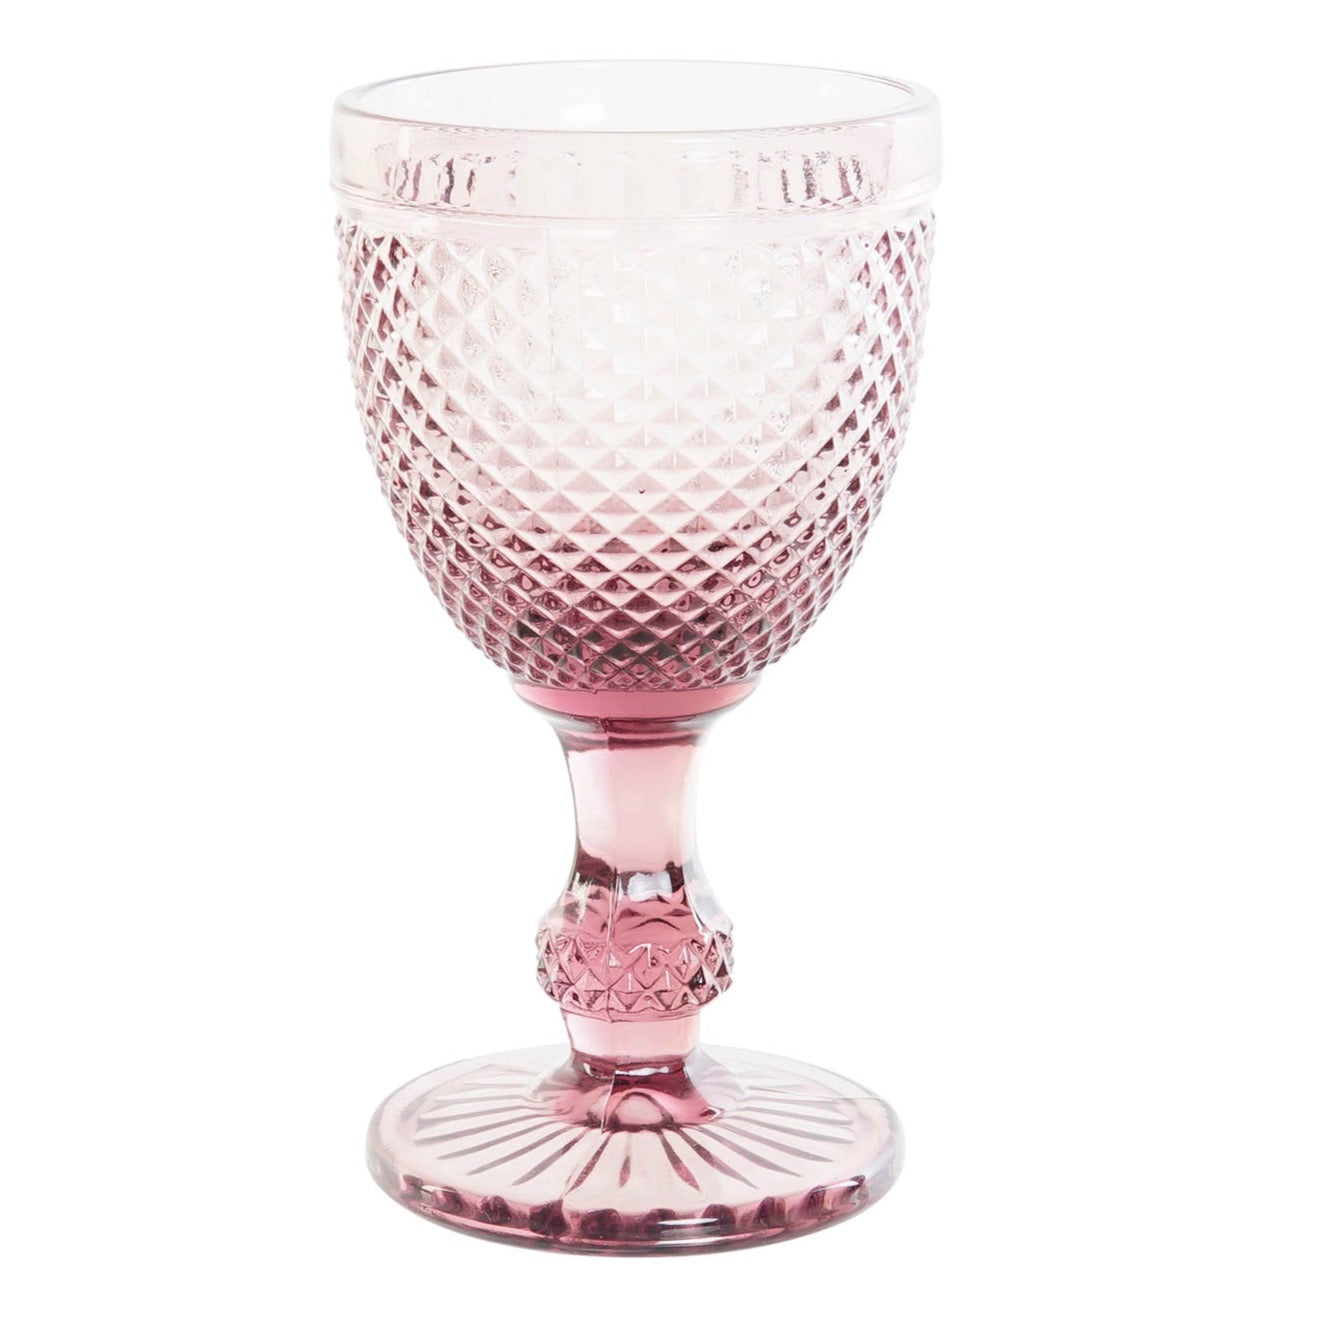 Pink carved glass goblet